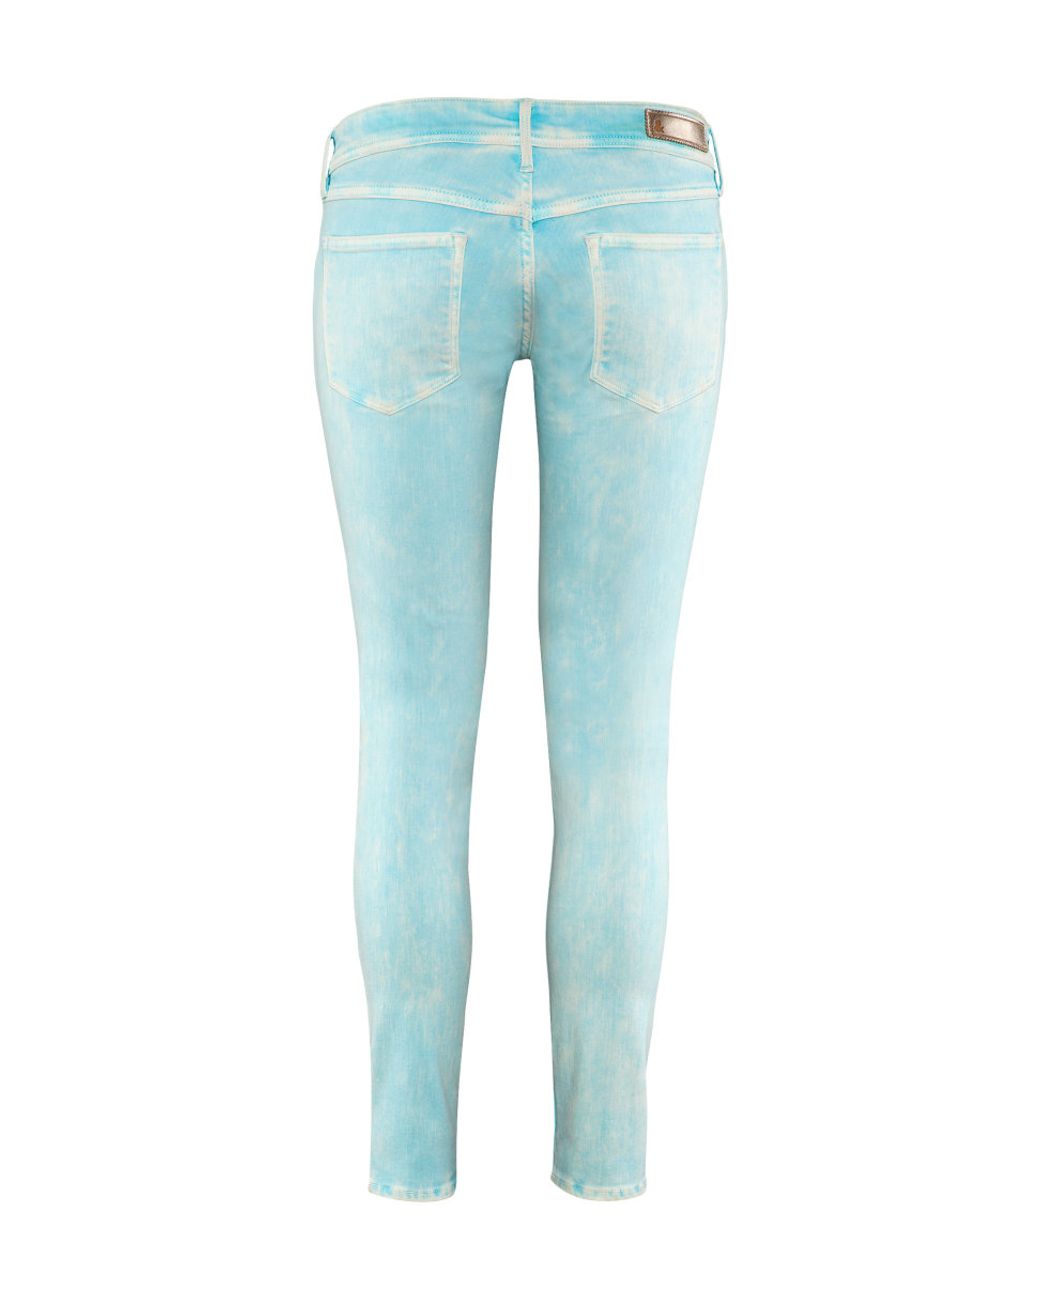 H&M Super Skinny Super Low Jeans in Blue | Lyst